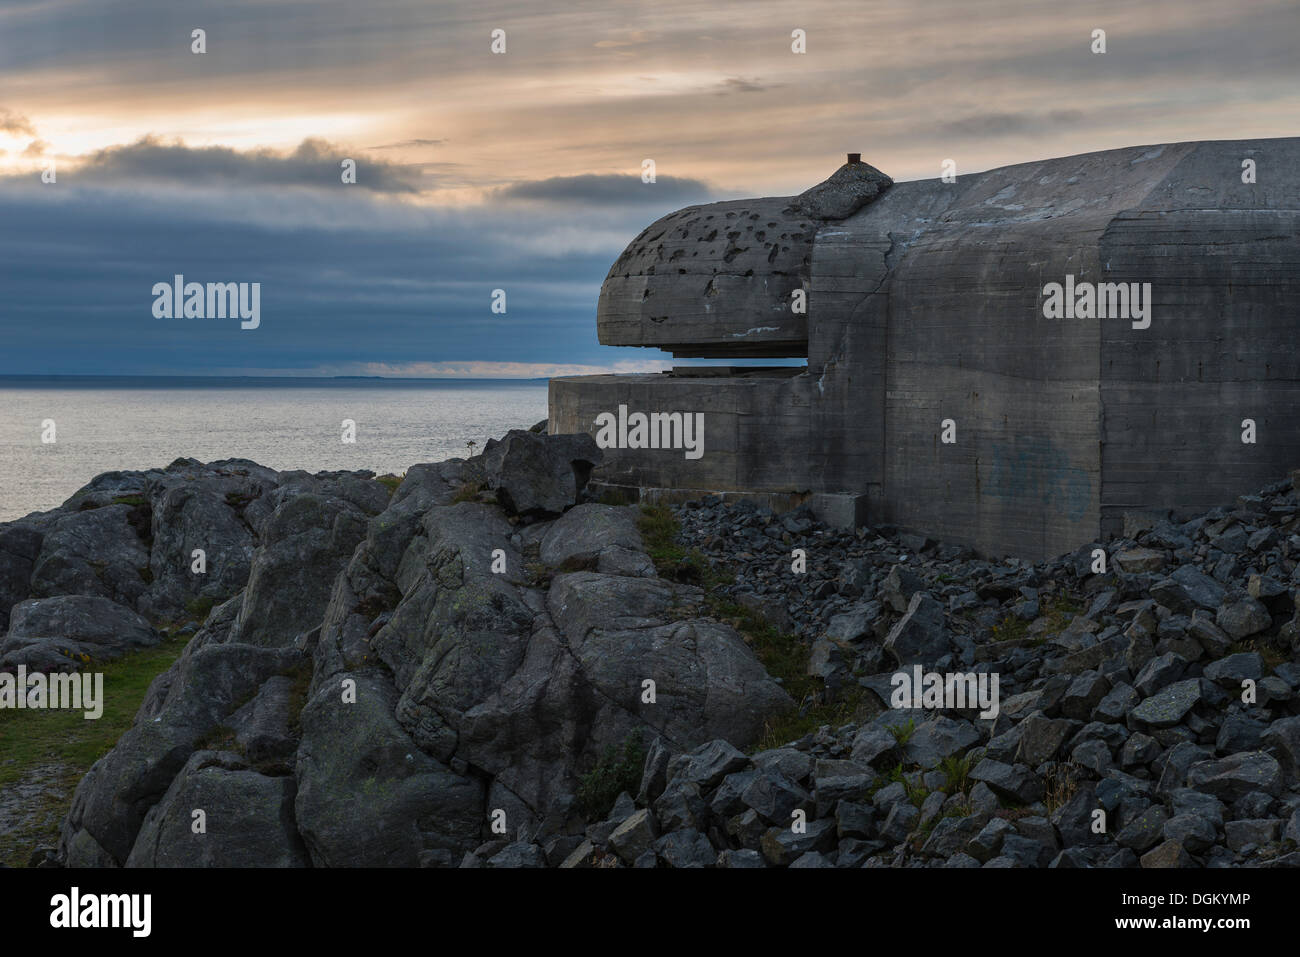 Bunker tedeschi della Seconda Guerra Mondiale che si affaccia sul mare nella luce della sera, Atlantic Wall, Skudeneshavn, Insel Karmøy, Rogaland Foto Stock